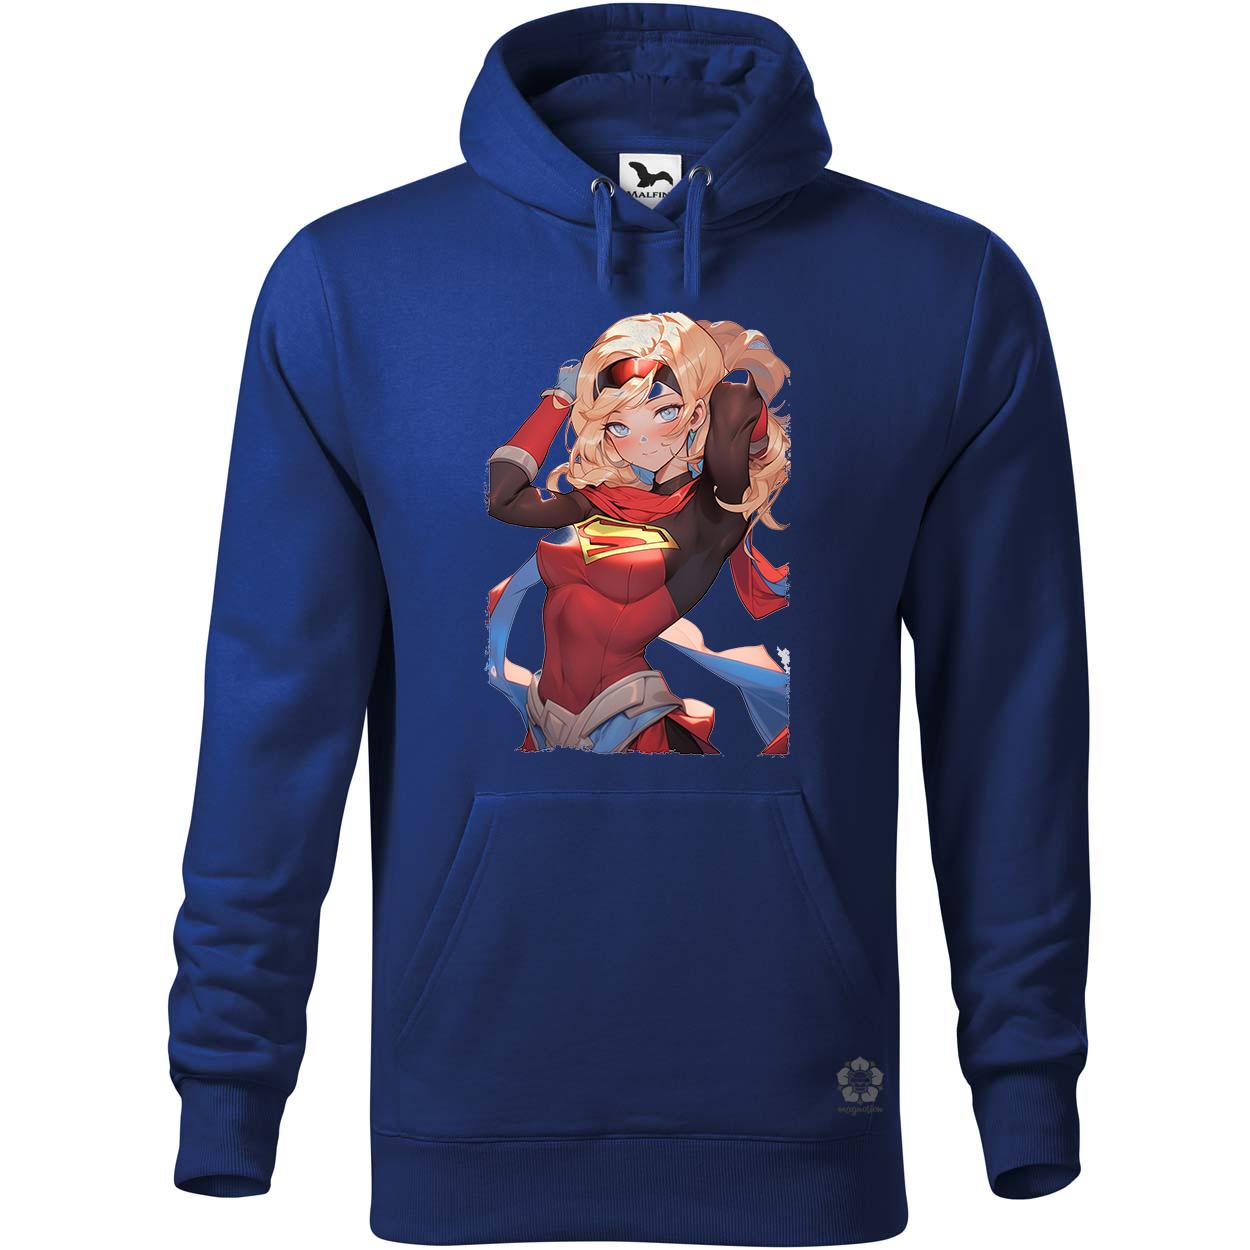 Anime Supergirl v3